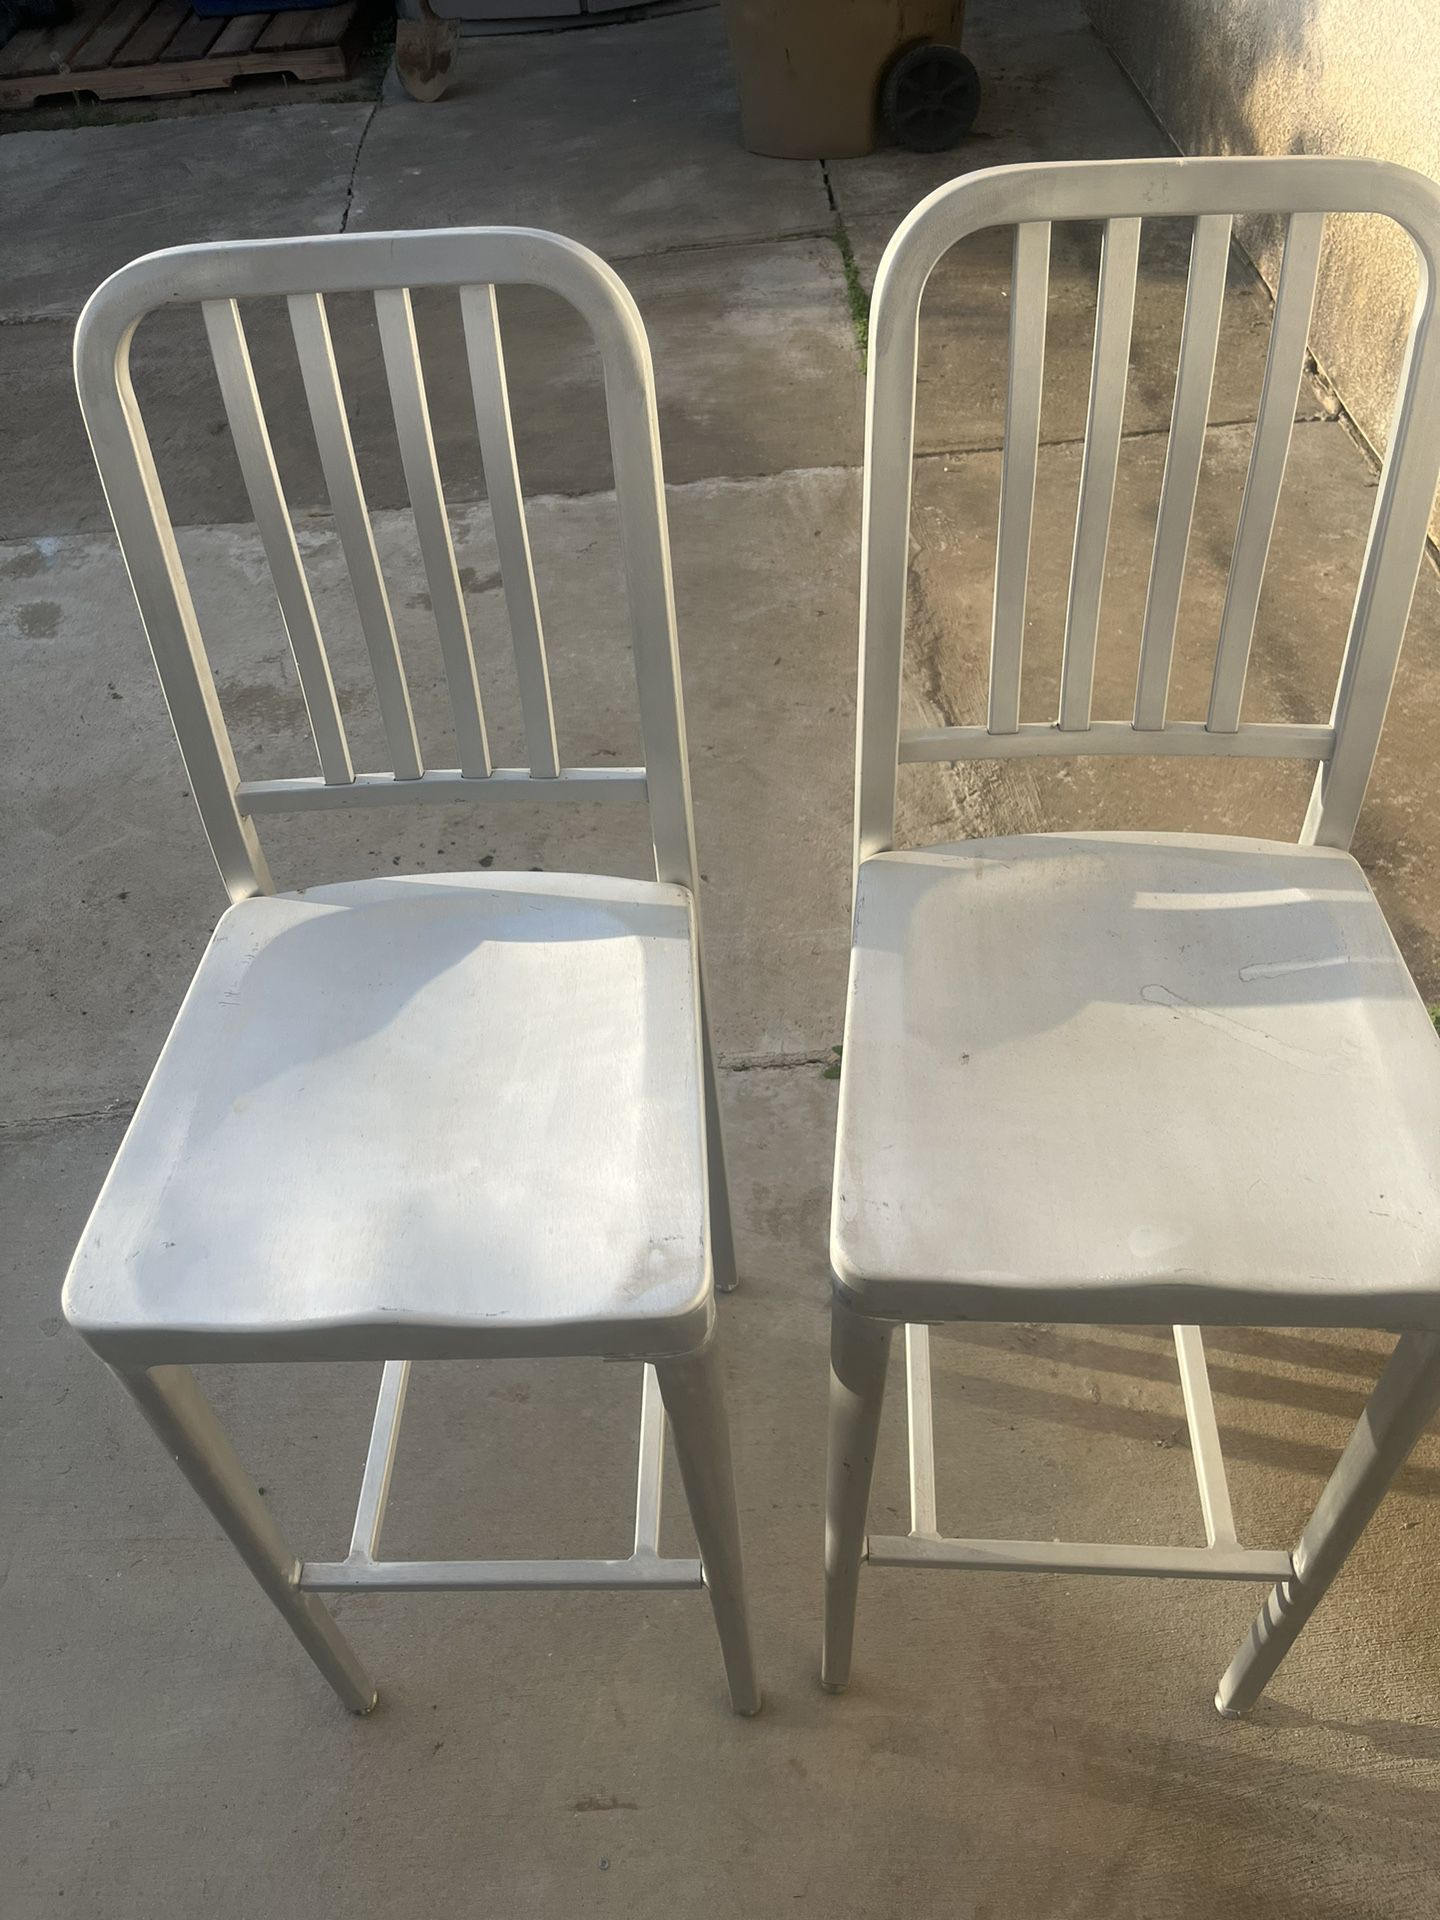 2 Aluminum bar chairs 